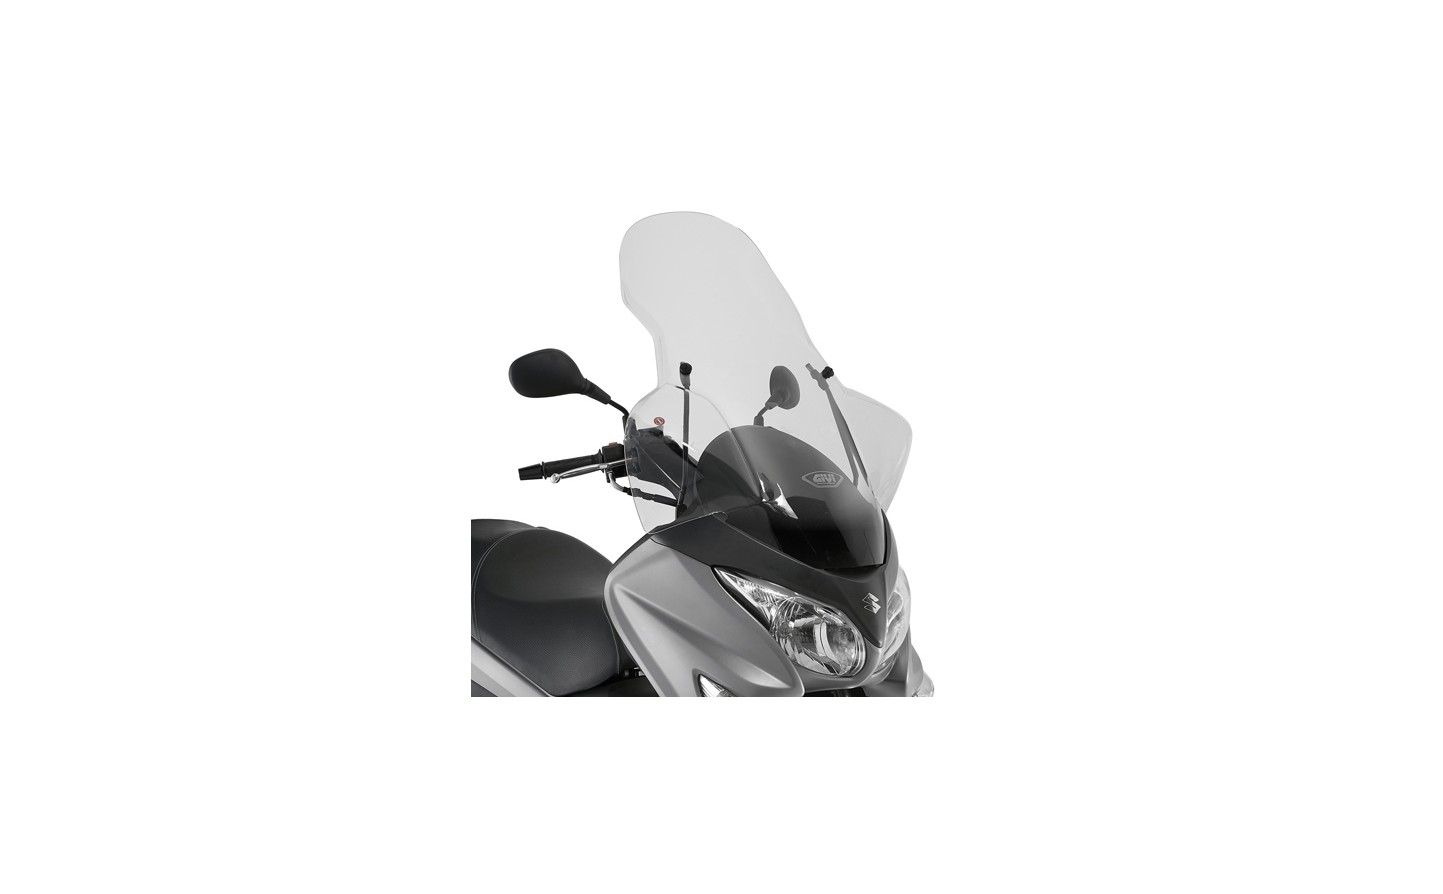 Parabrisas y protecciones para moto y scooter - Givi